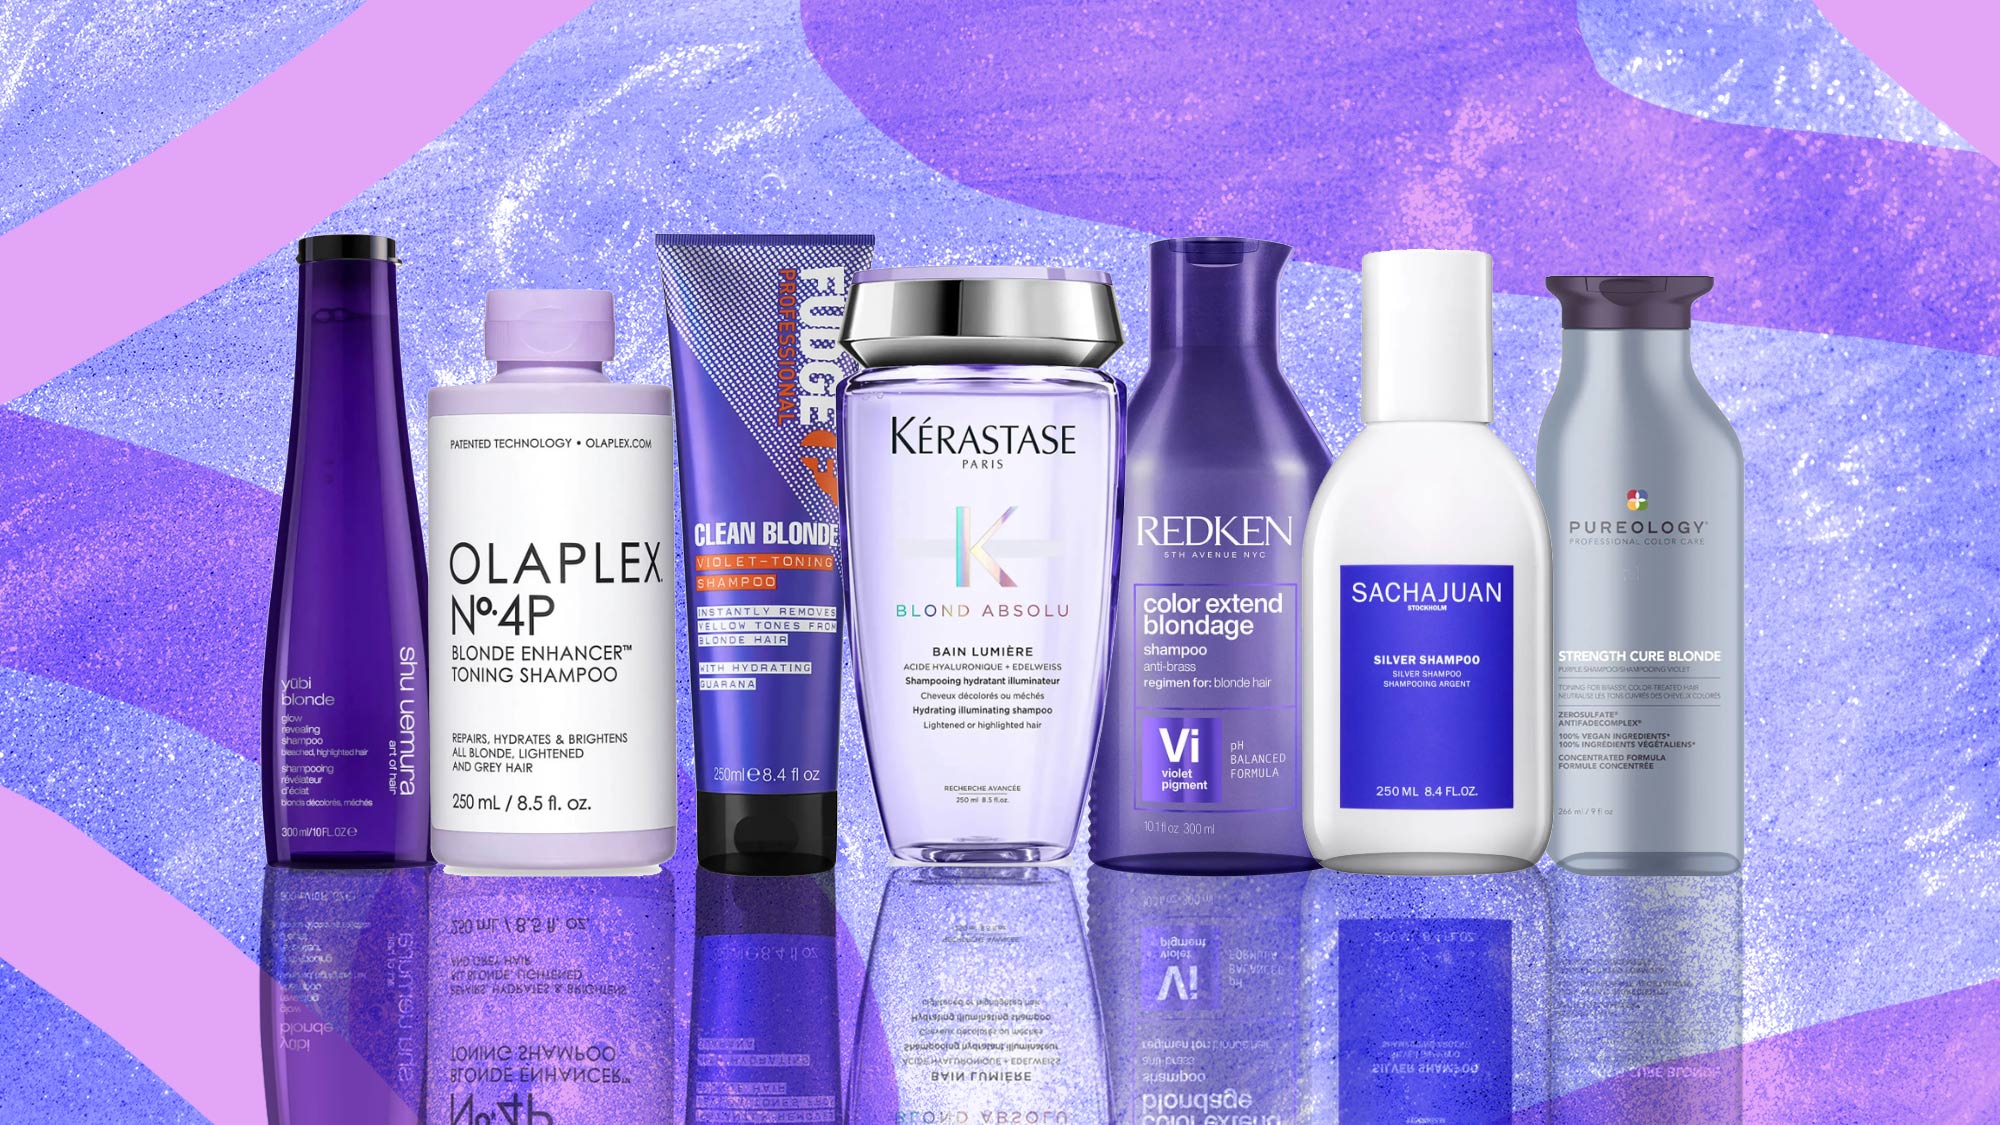 purple shampoo brands